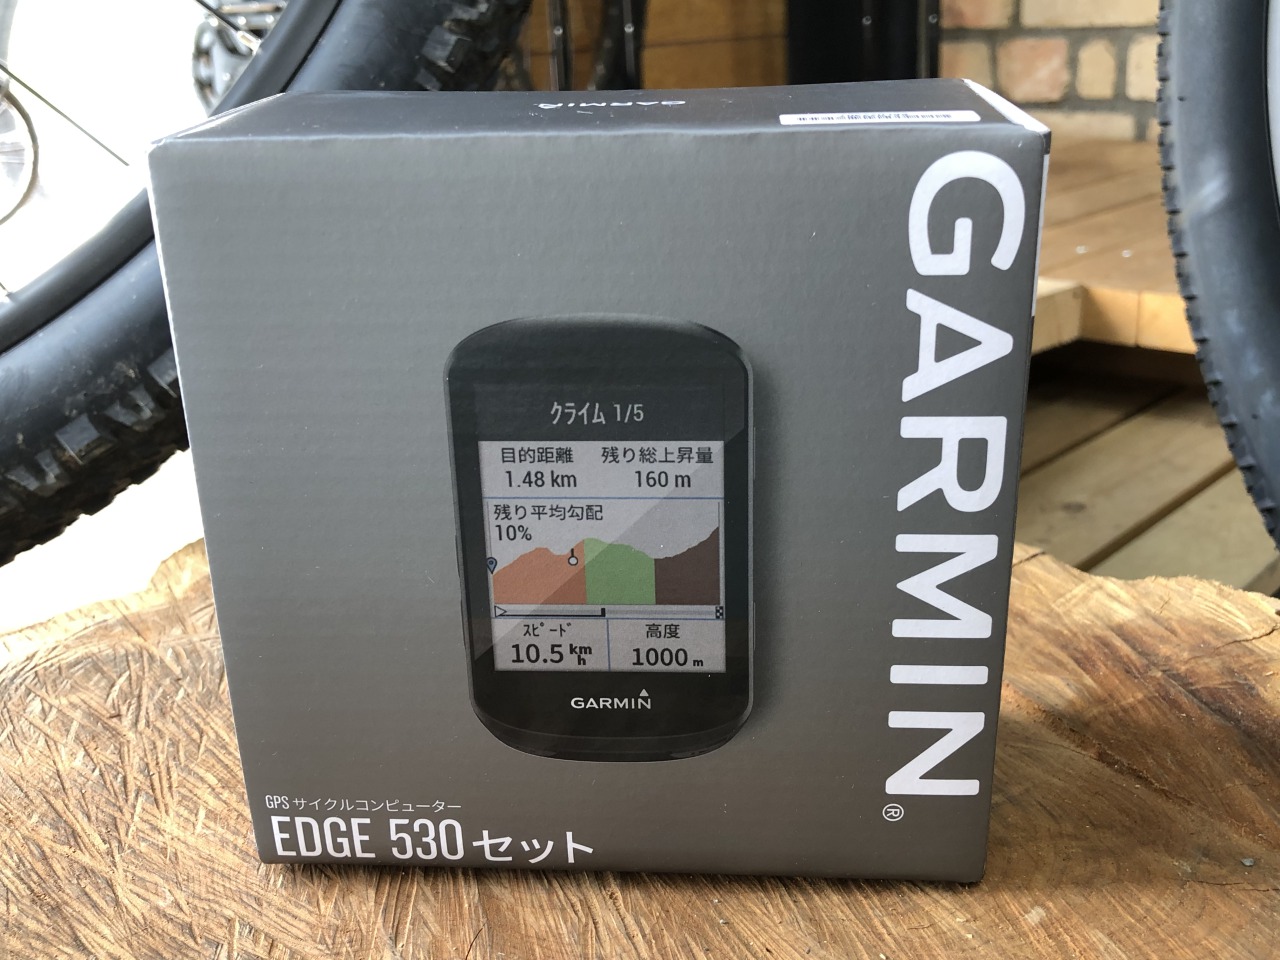 GPSサイクルコンピューター GARMIN再入荷しています！ | Climb cycle sports